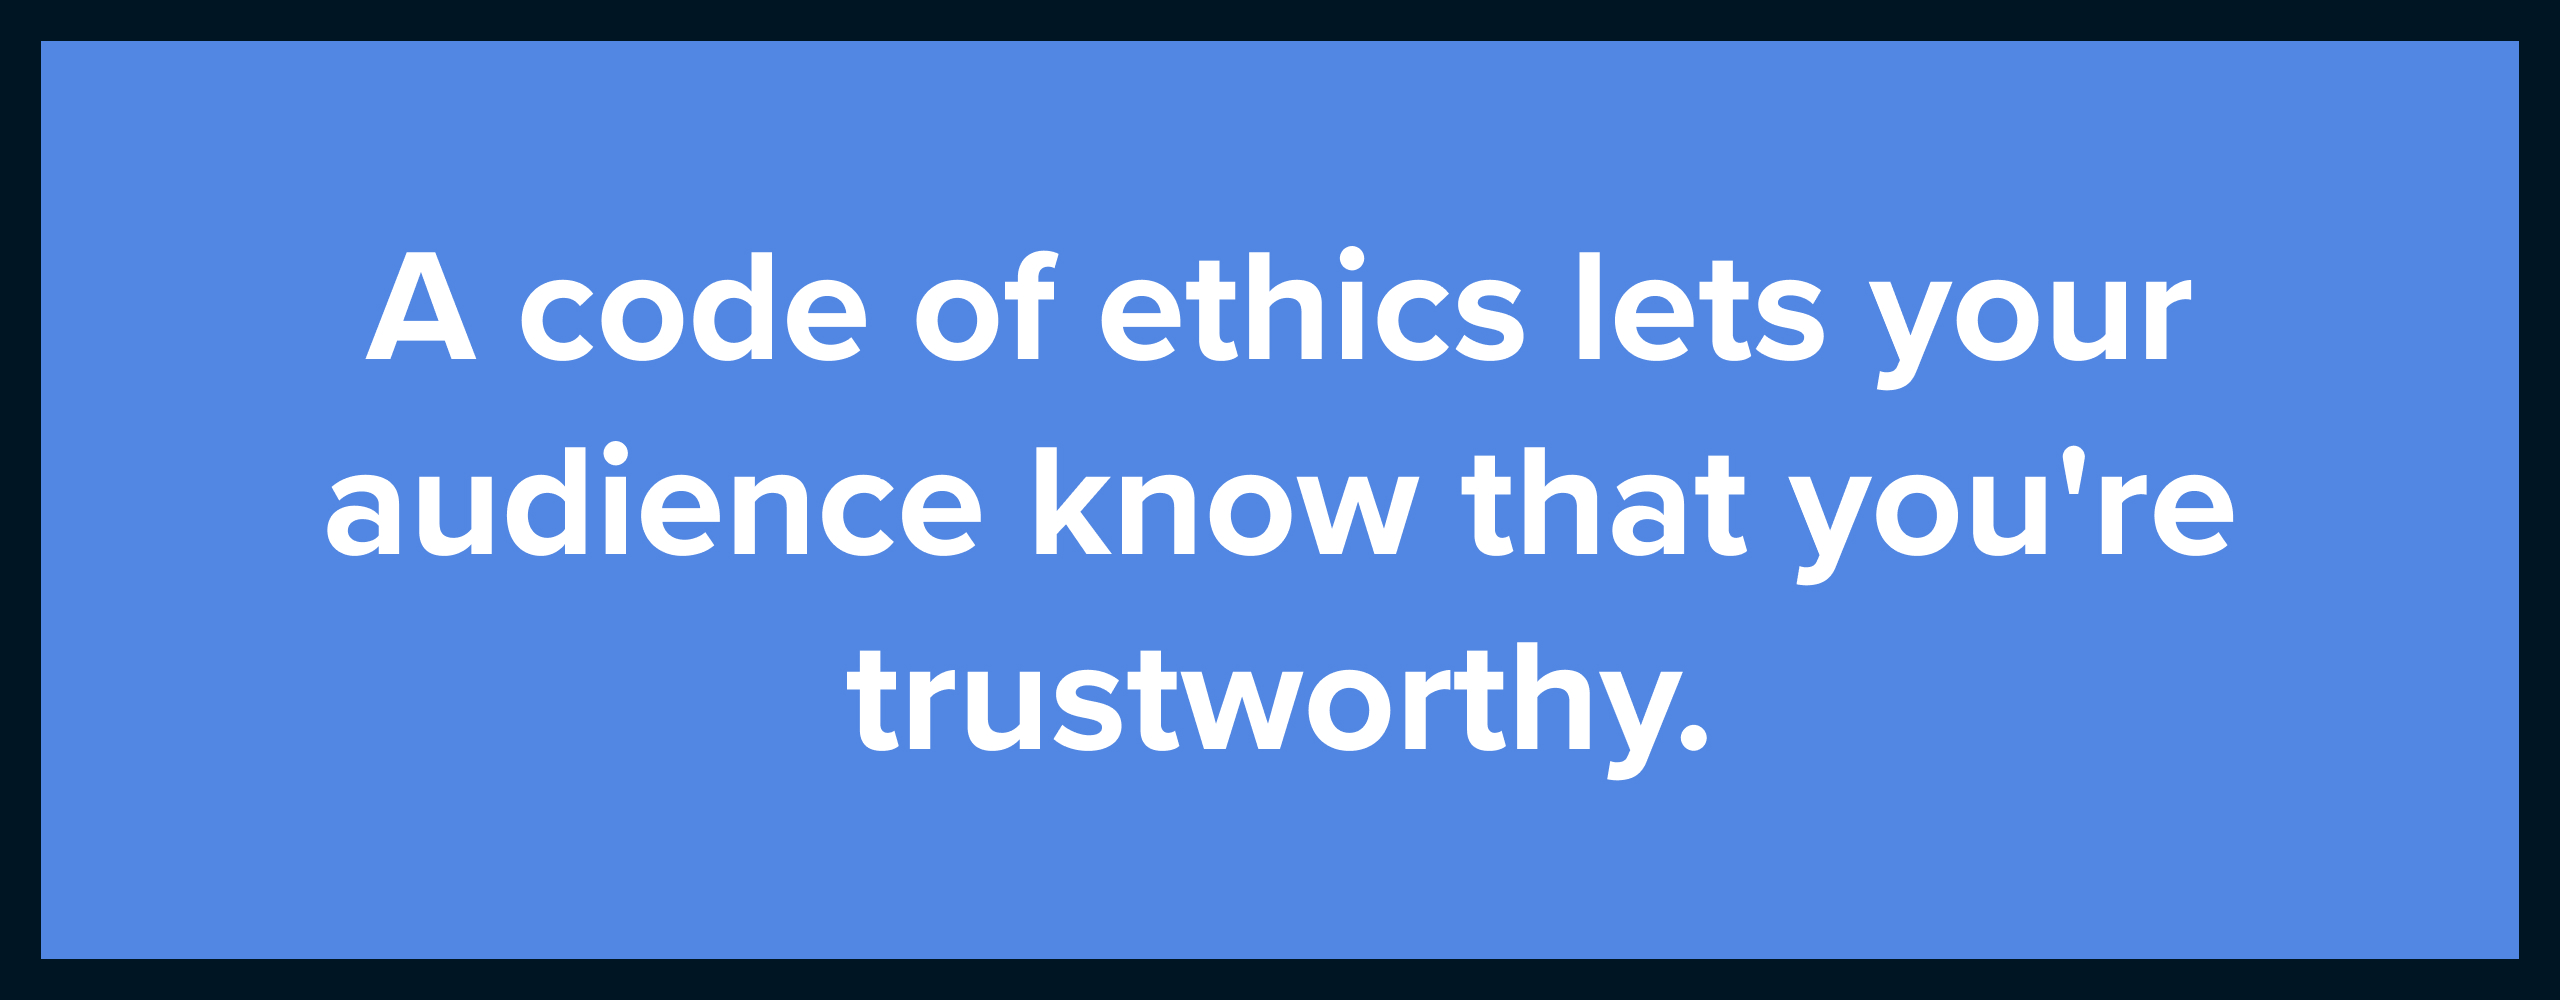 content-ethics